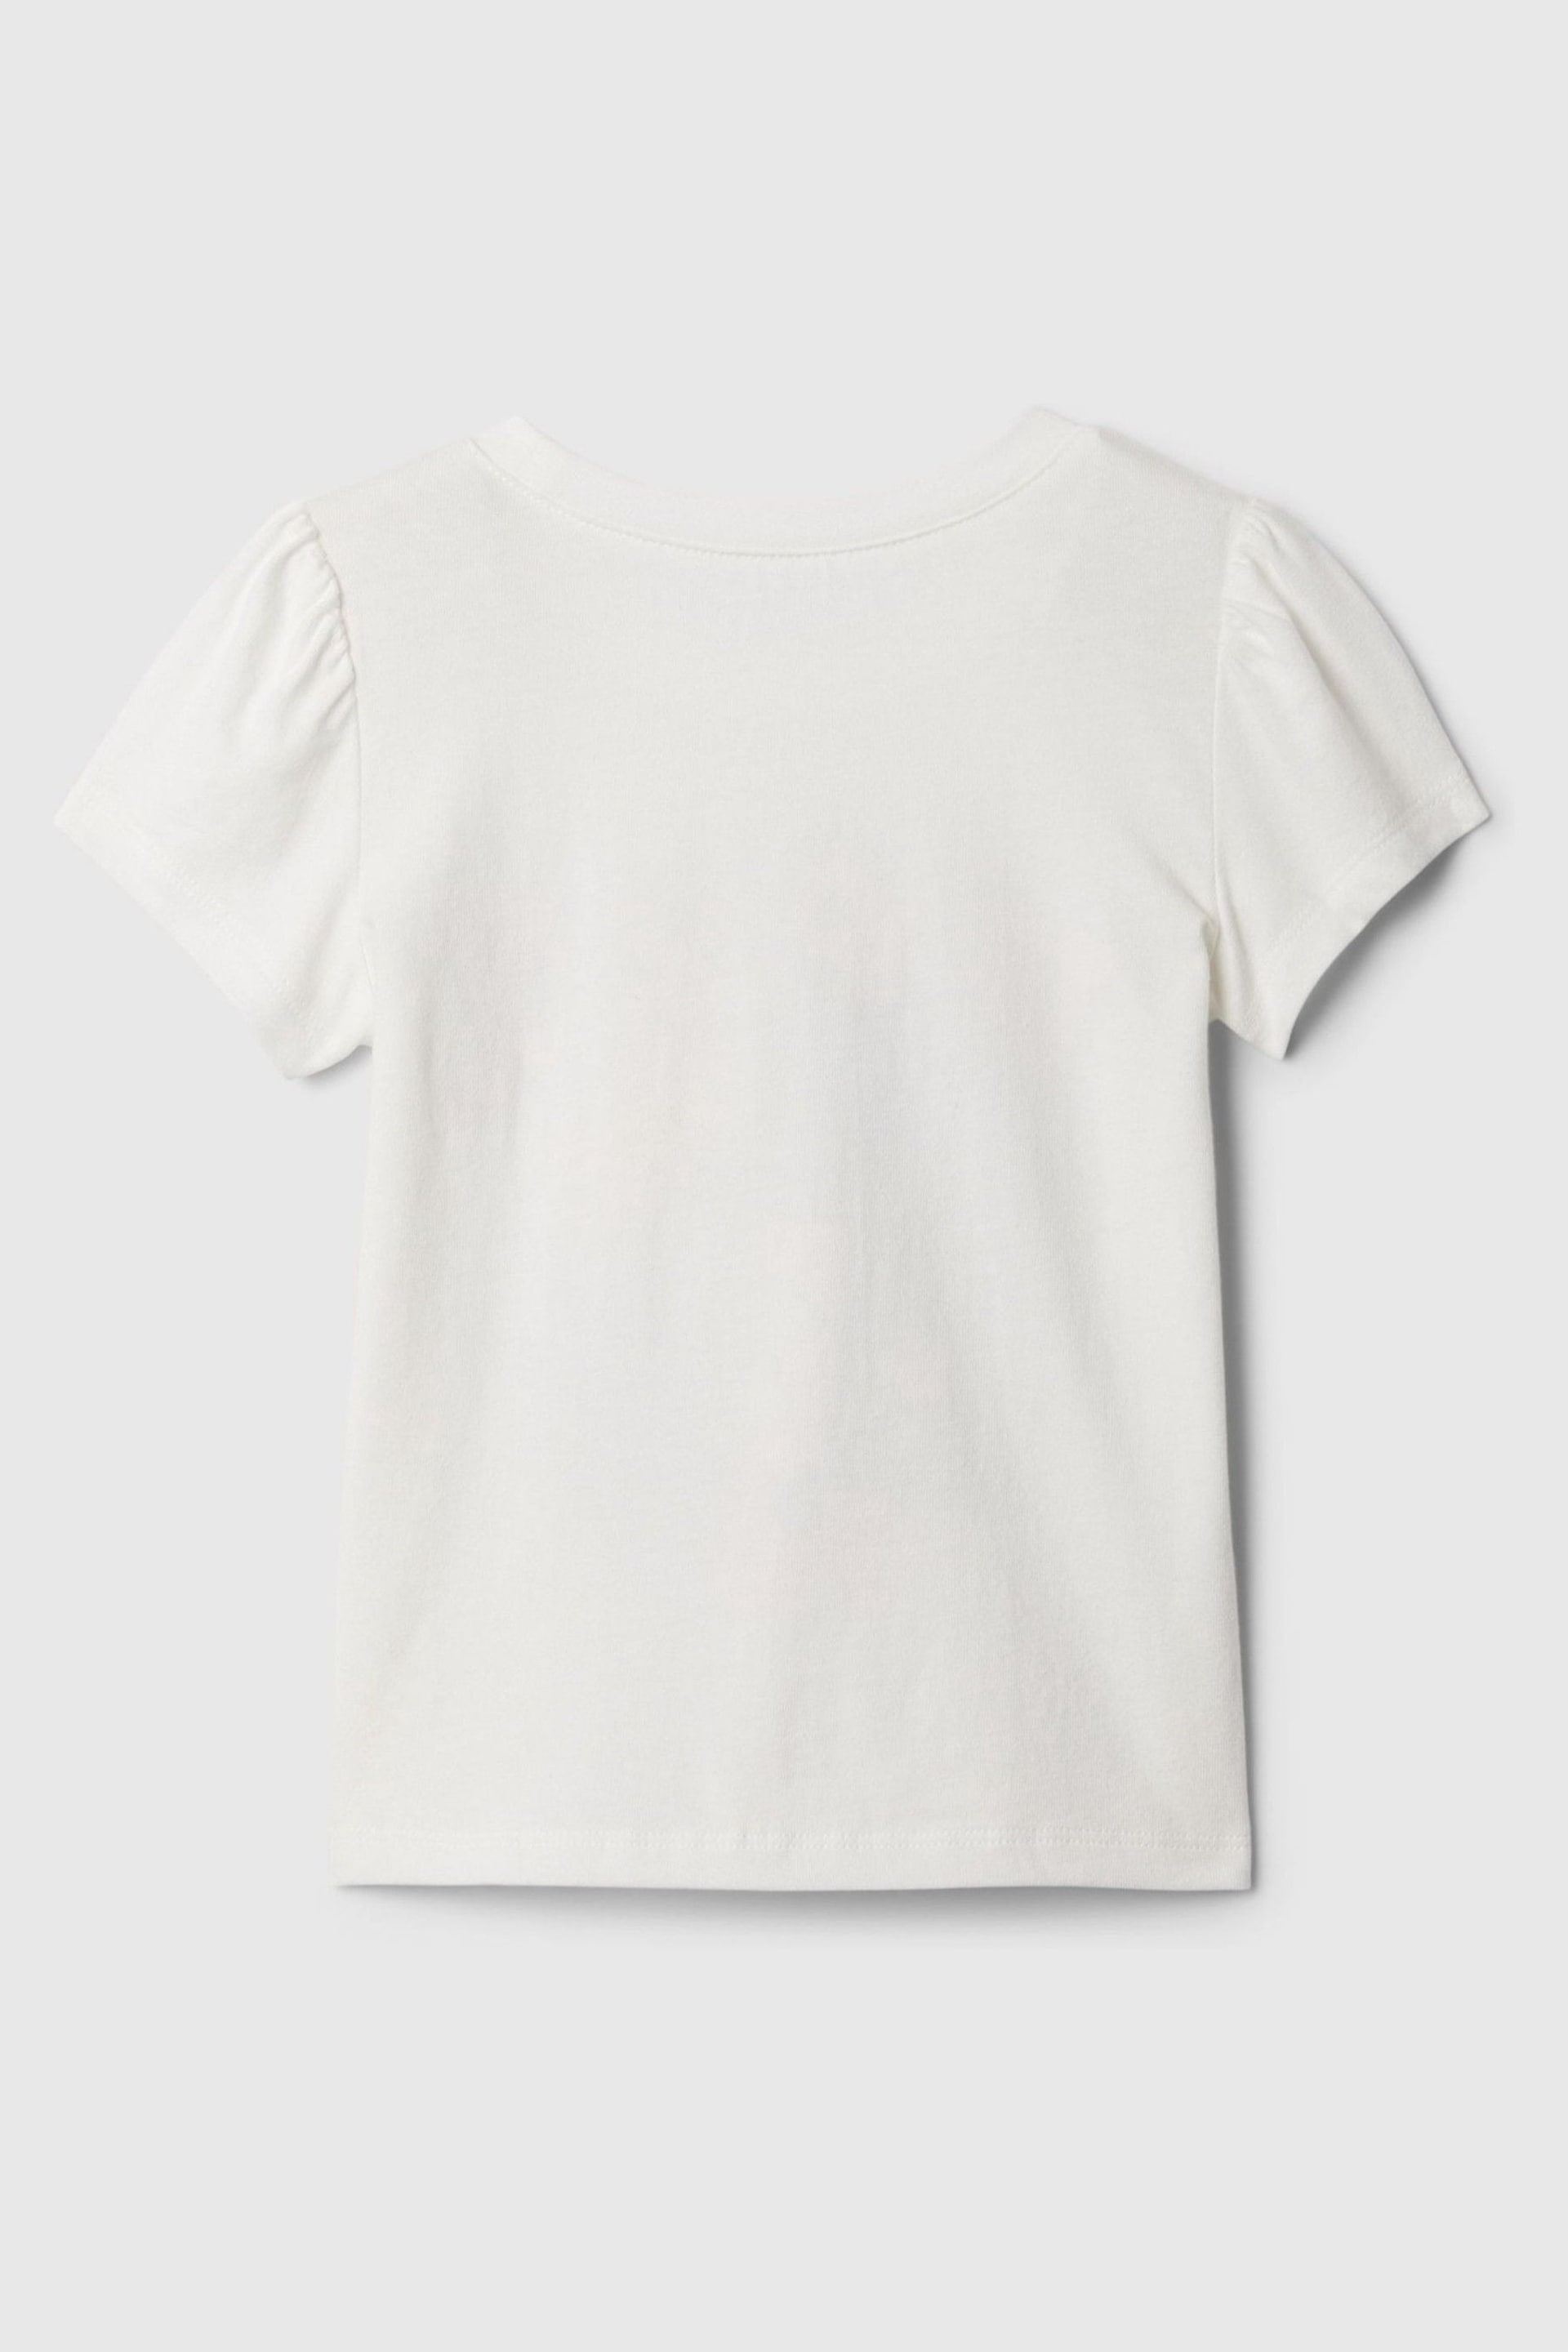 Gap White Summer Graphic Short Sleeve T-Shirt (Newborn-5yrs) - Image 2 of 2